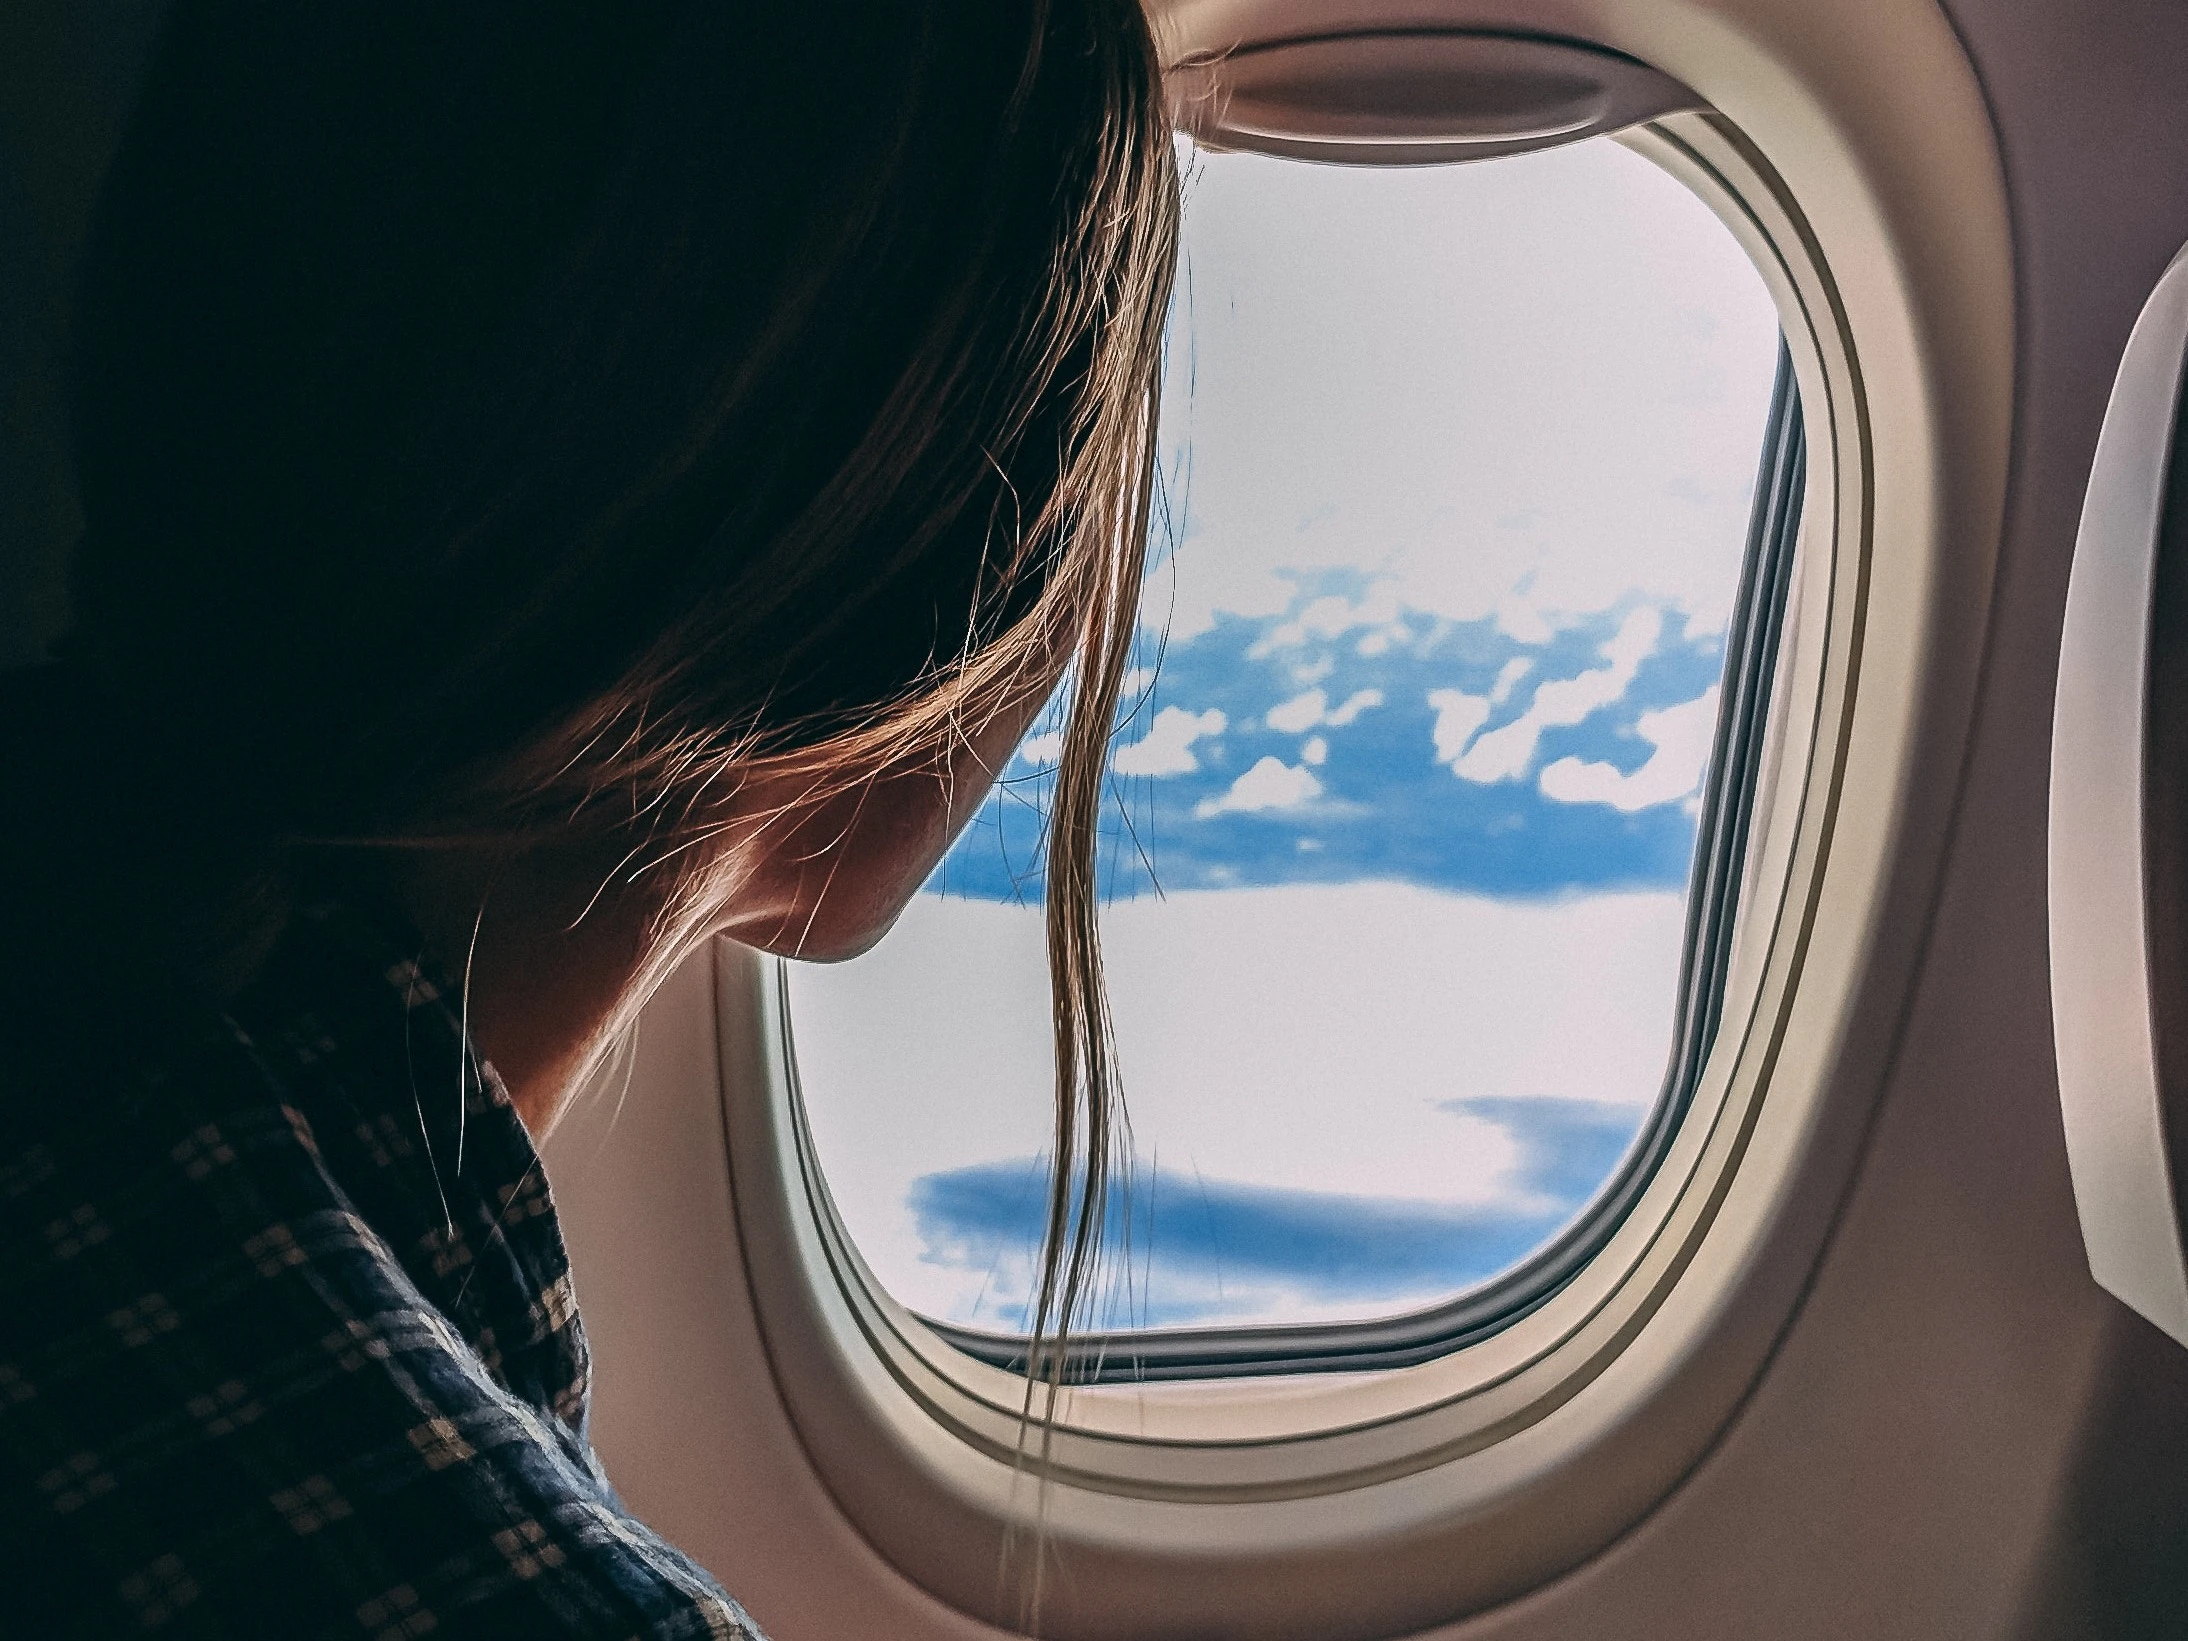 زن از پنجره هواپیما به بیرون نگاه می کند